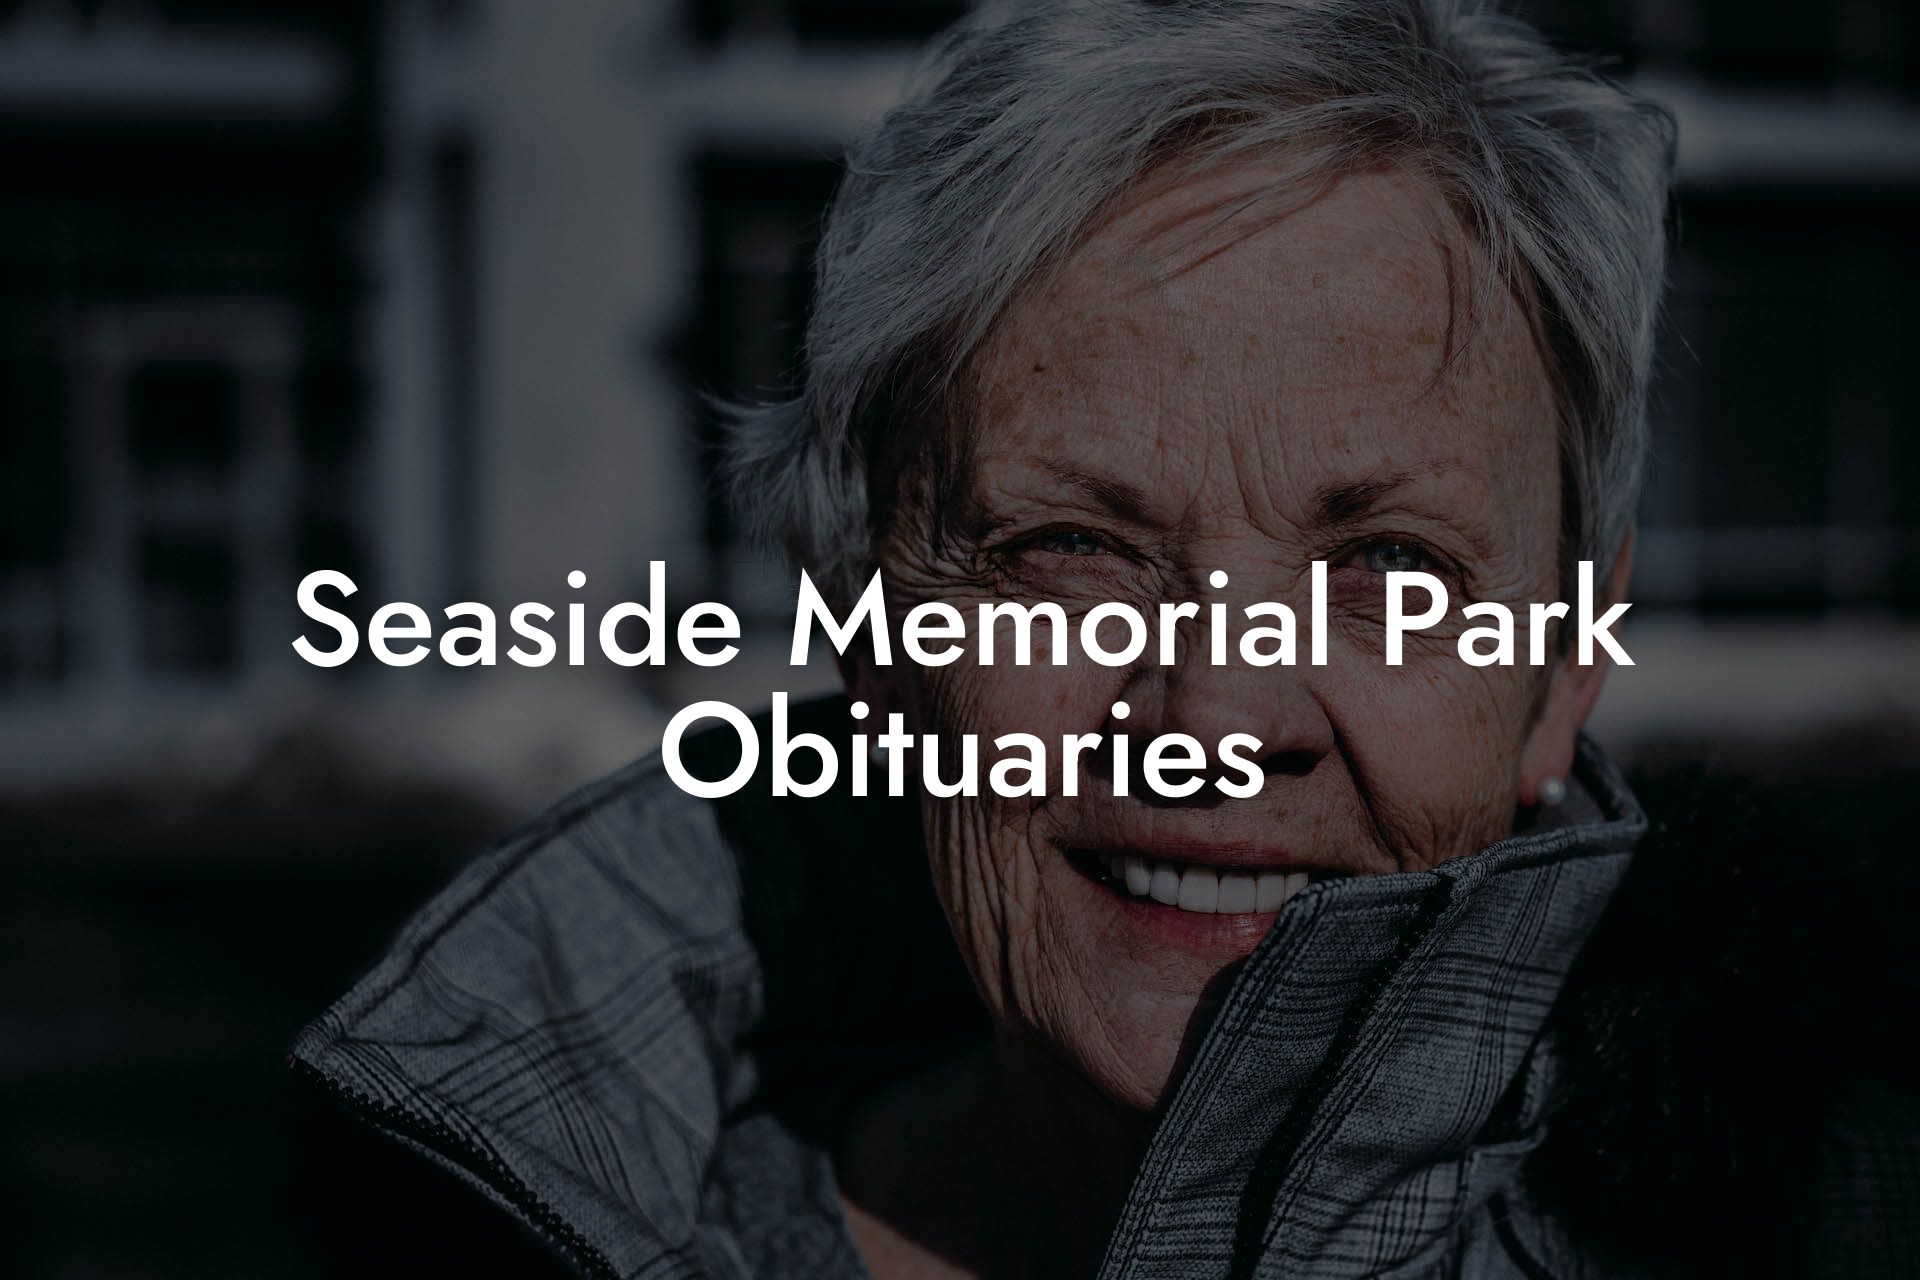 Seaside Memorial Park Obituaries